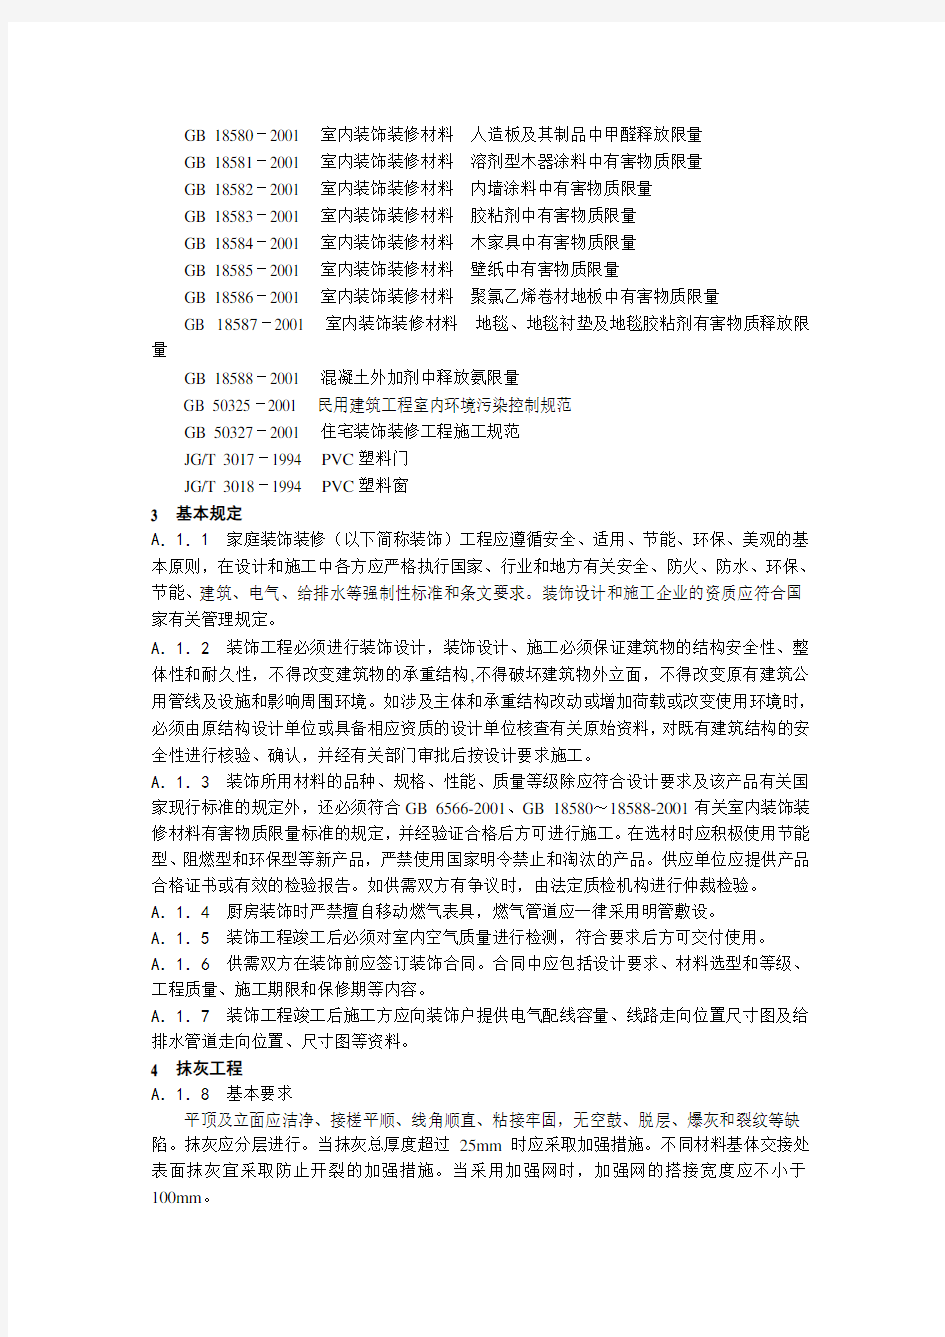 DB33 1022- 浙江省家庭装饰装修工程质量规范